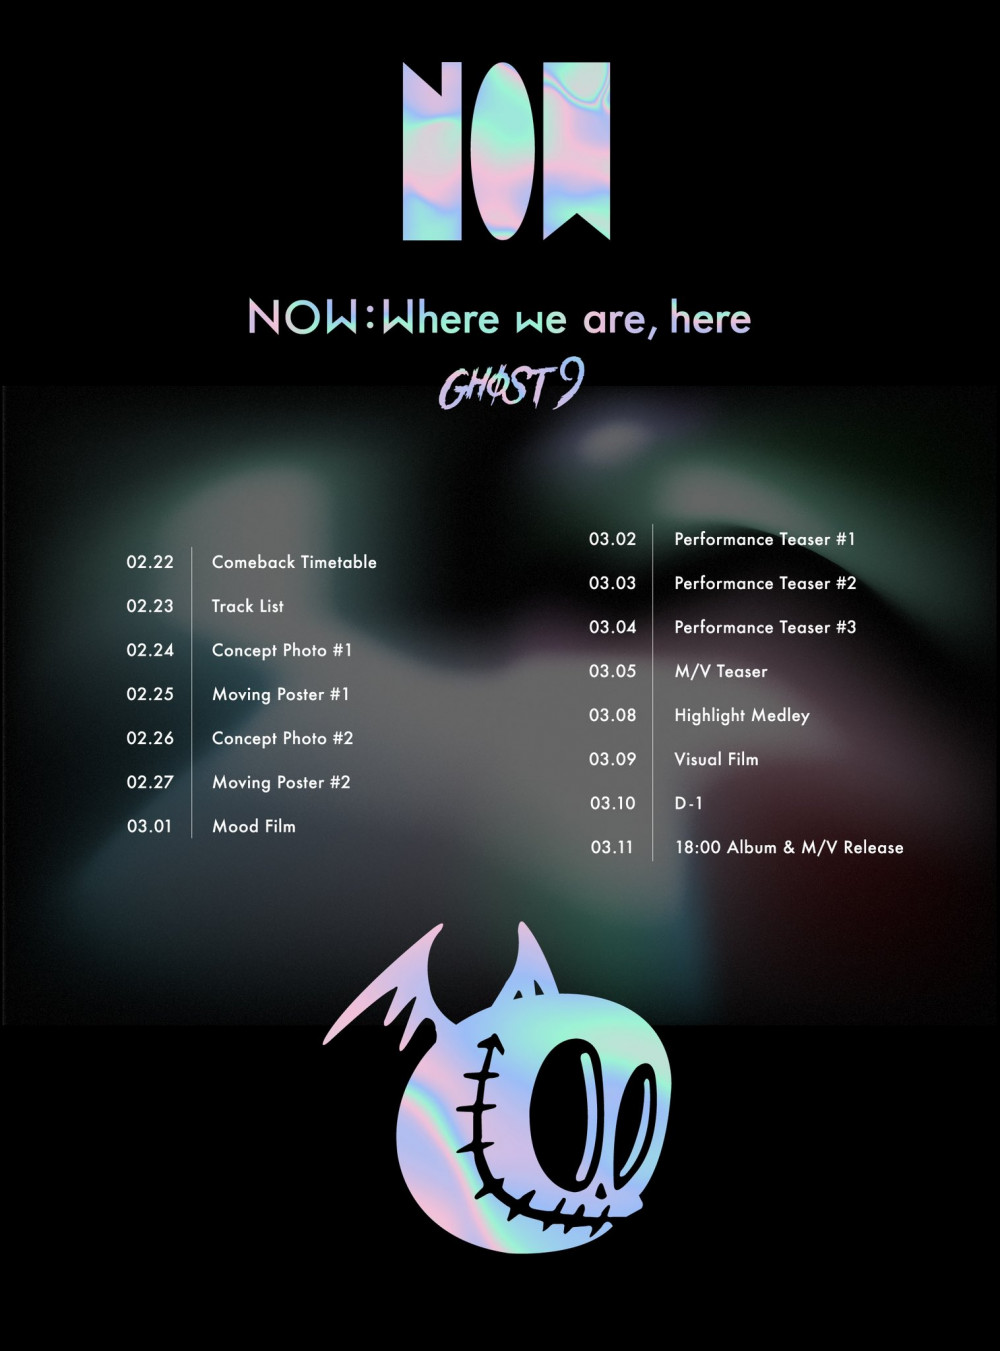 [Камбэк] Ghost9 альбом "NOW: Where we are, here": музыкальный клип "Seoul"